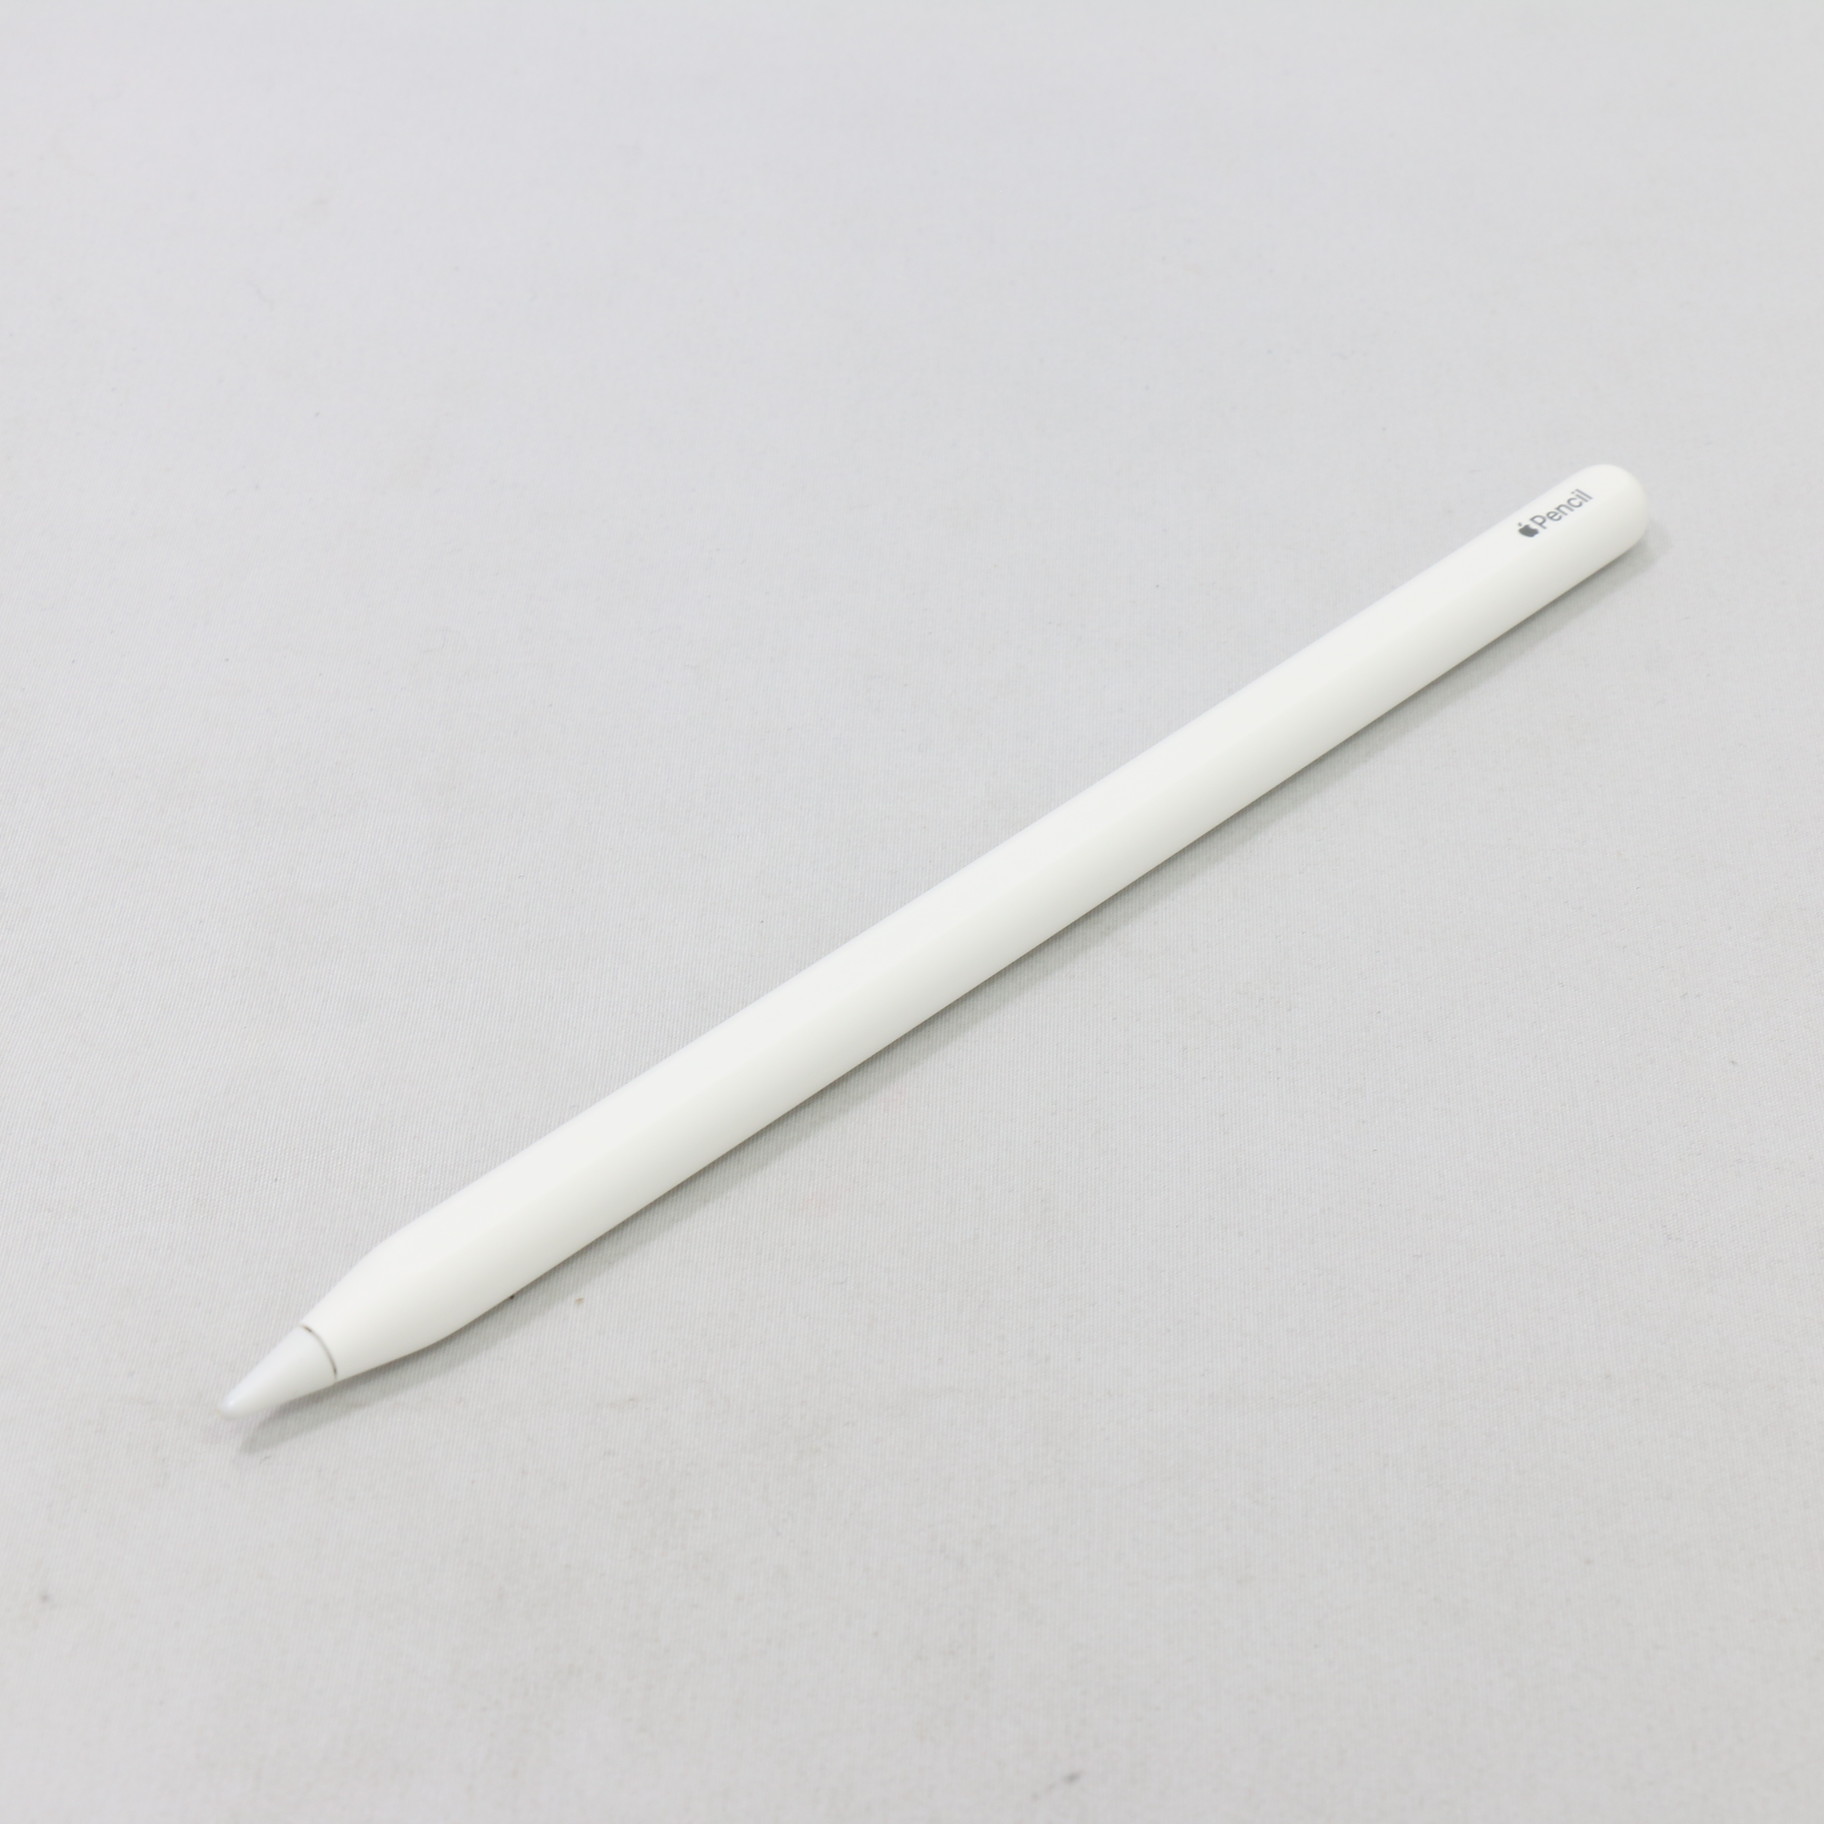 【未開封】Apple pencil 第2世代　アップルペンシル